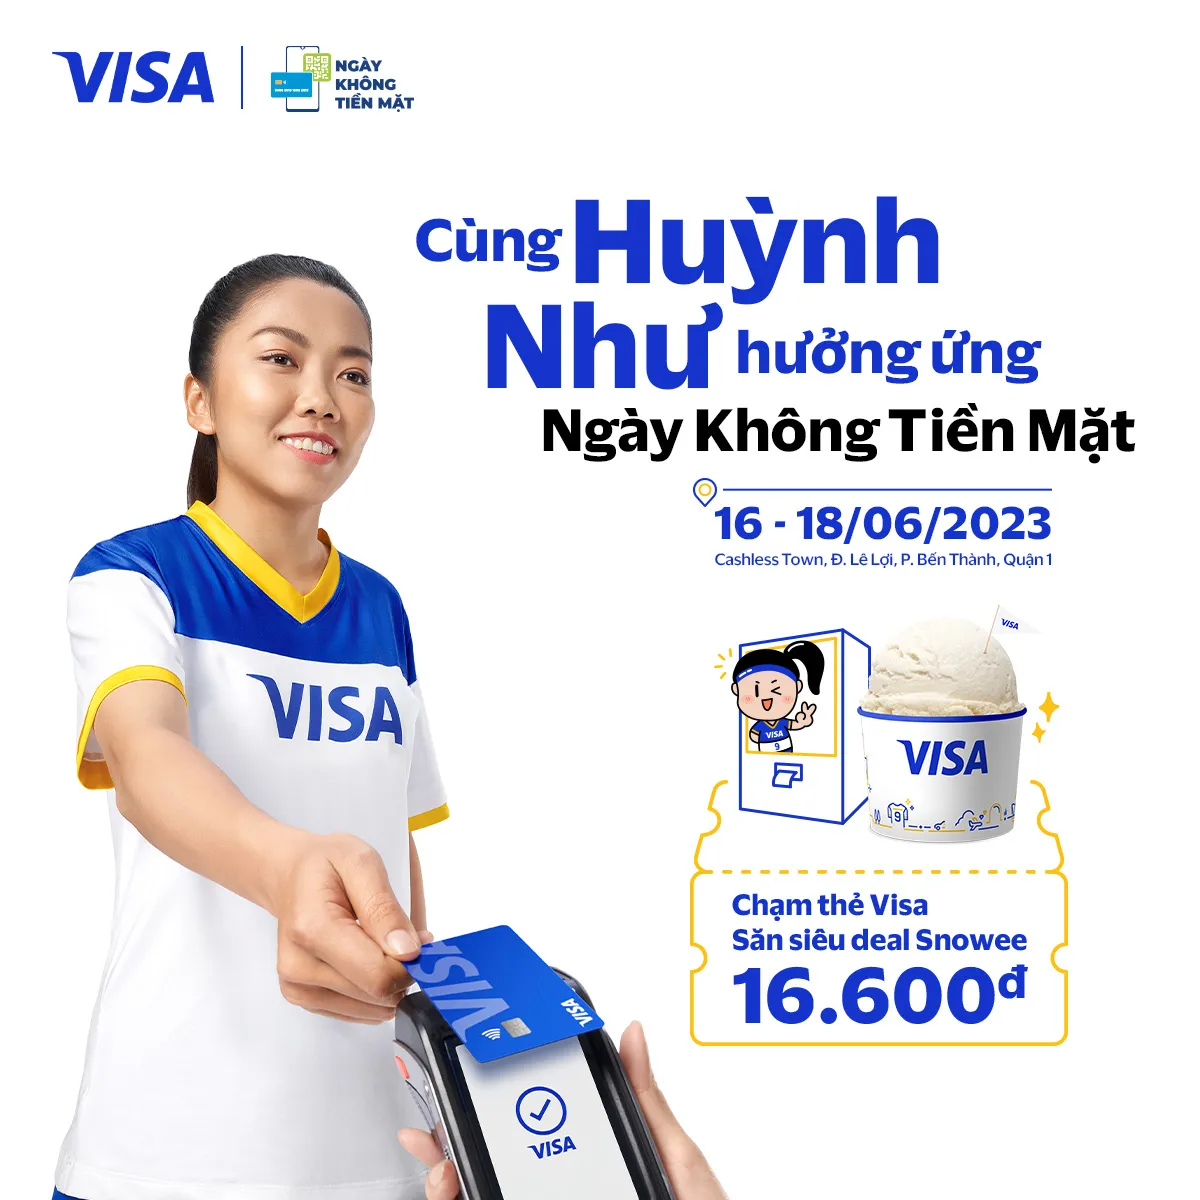 Visa đồng hành cùng chuỗi sự kiện “Ngày không tiền mặt” lần thứ 5, thúc đẩy chuyển đổi số tại Việt Nam